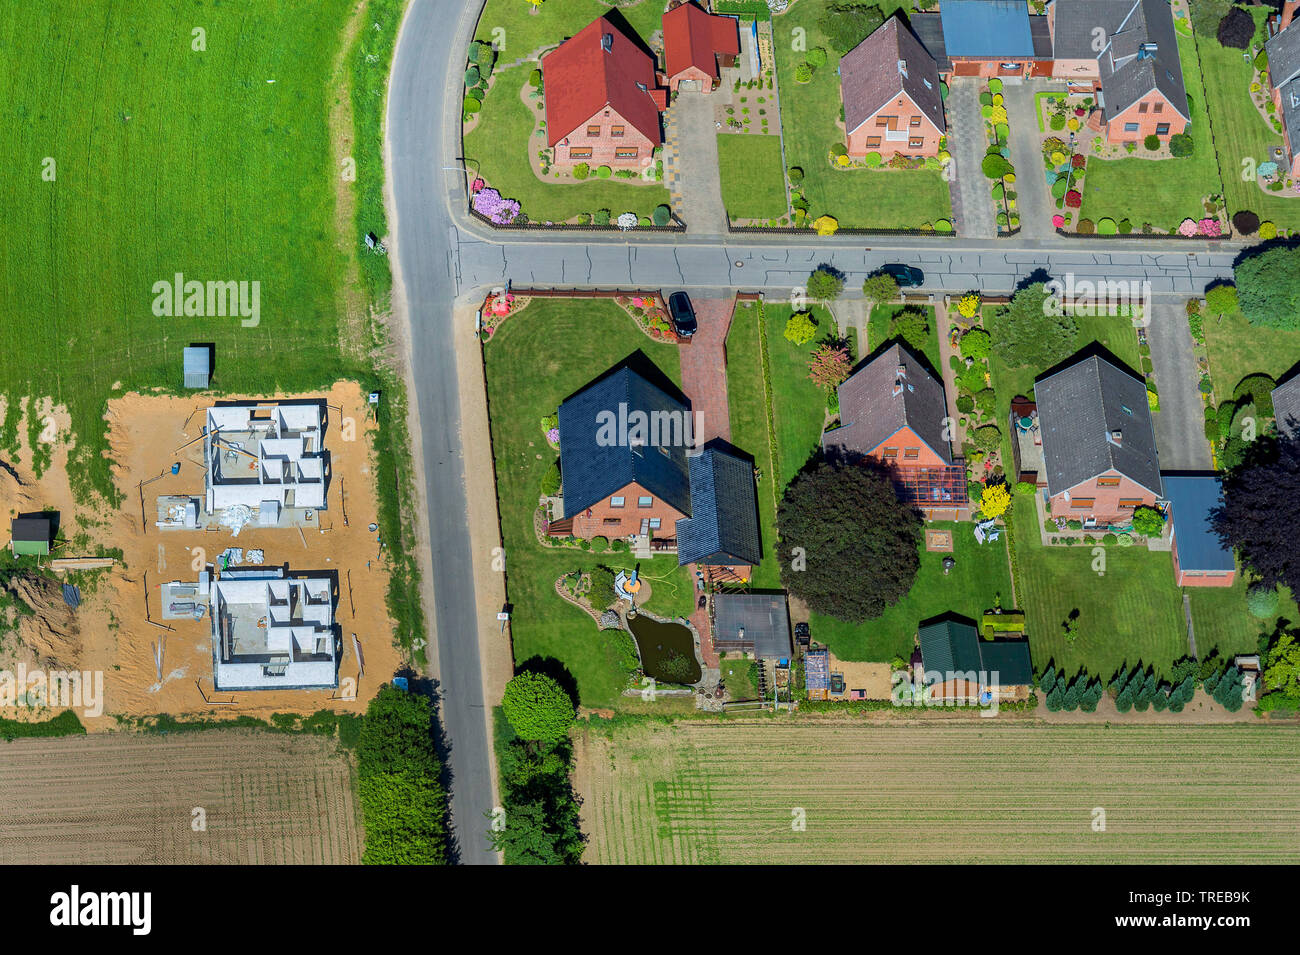 Vue aérienne de l'installation rurale et de nouveaux bâtiments, l'Allemagne, Schleswig-Holstein, dans le Nord de la Frise Orientale Banque D'Images